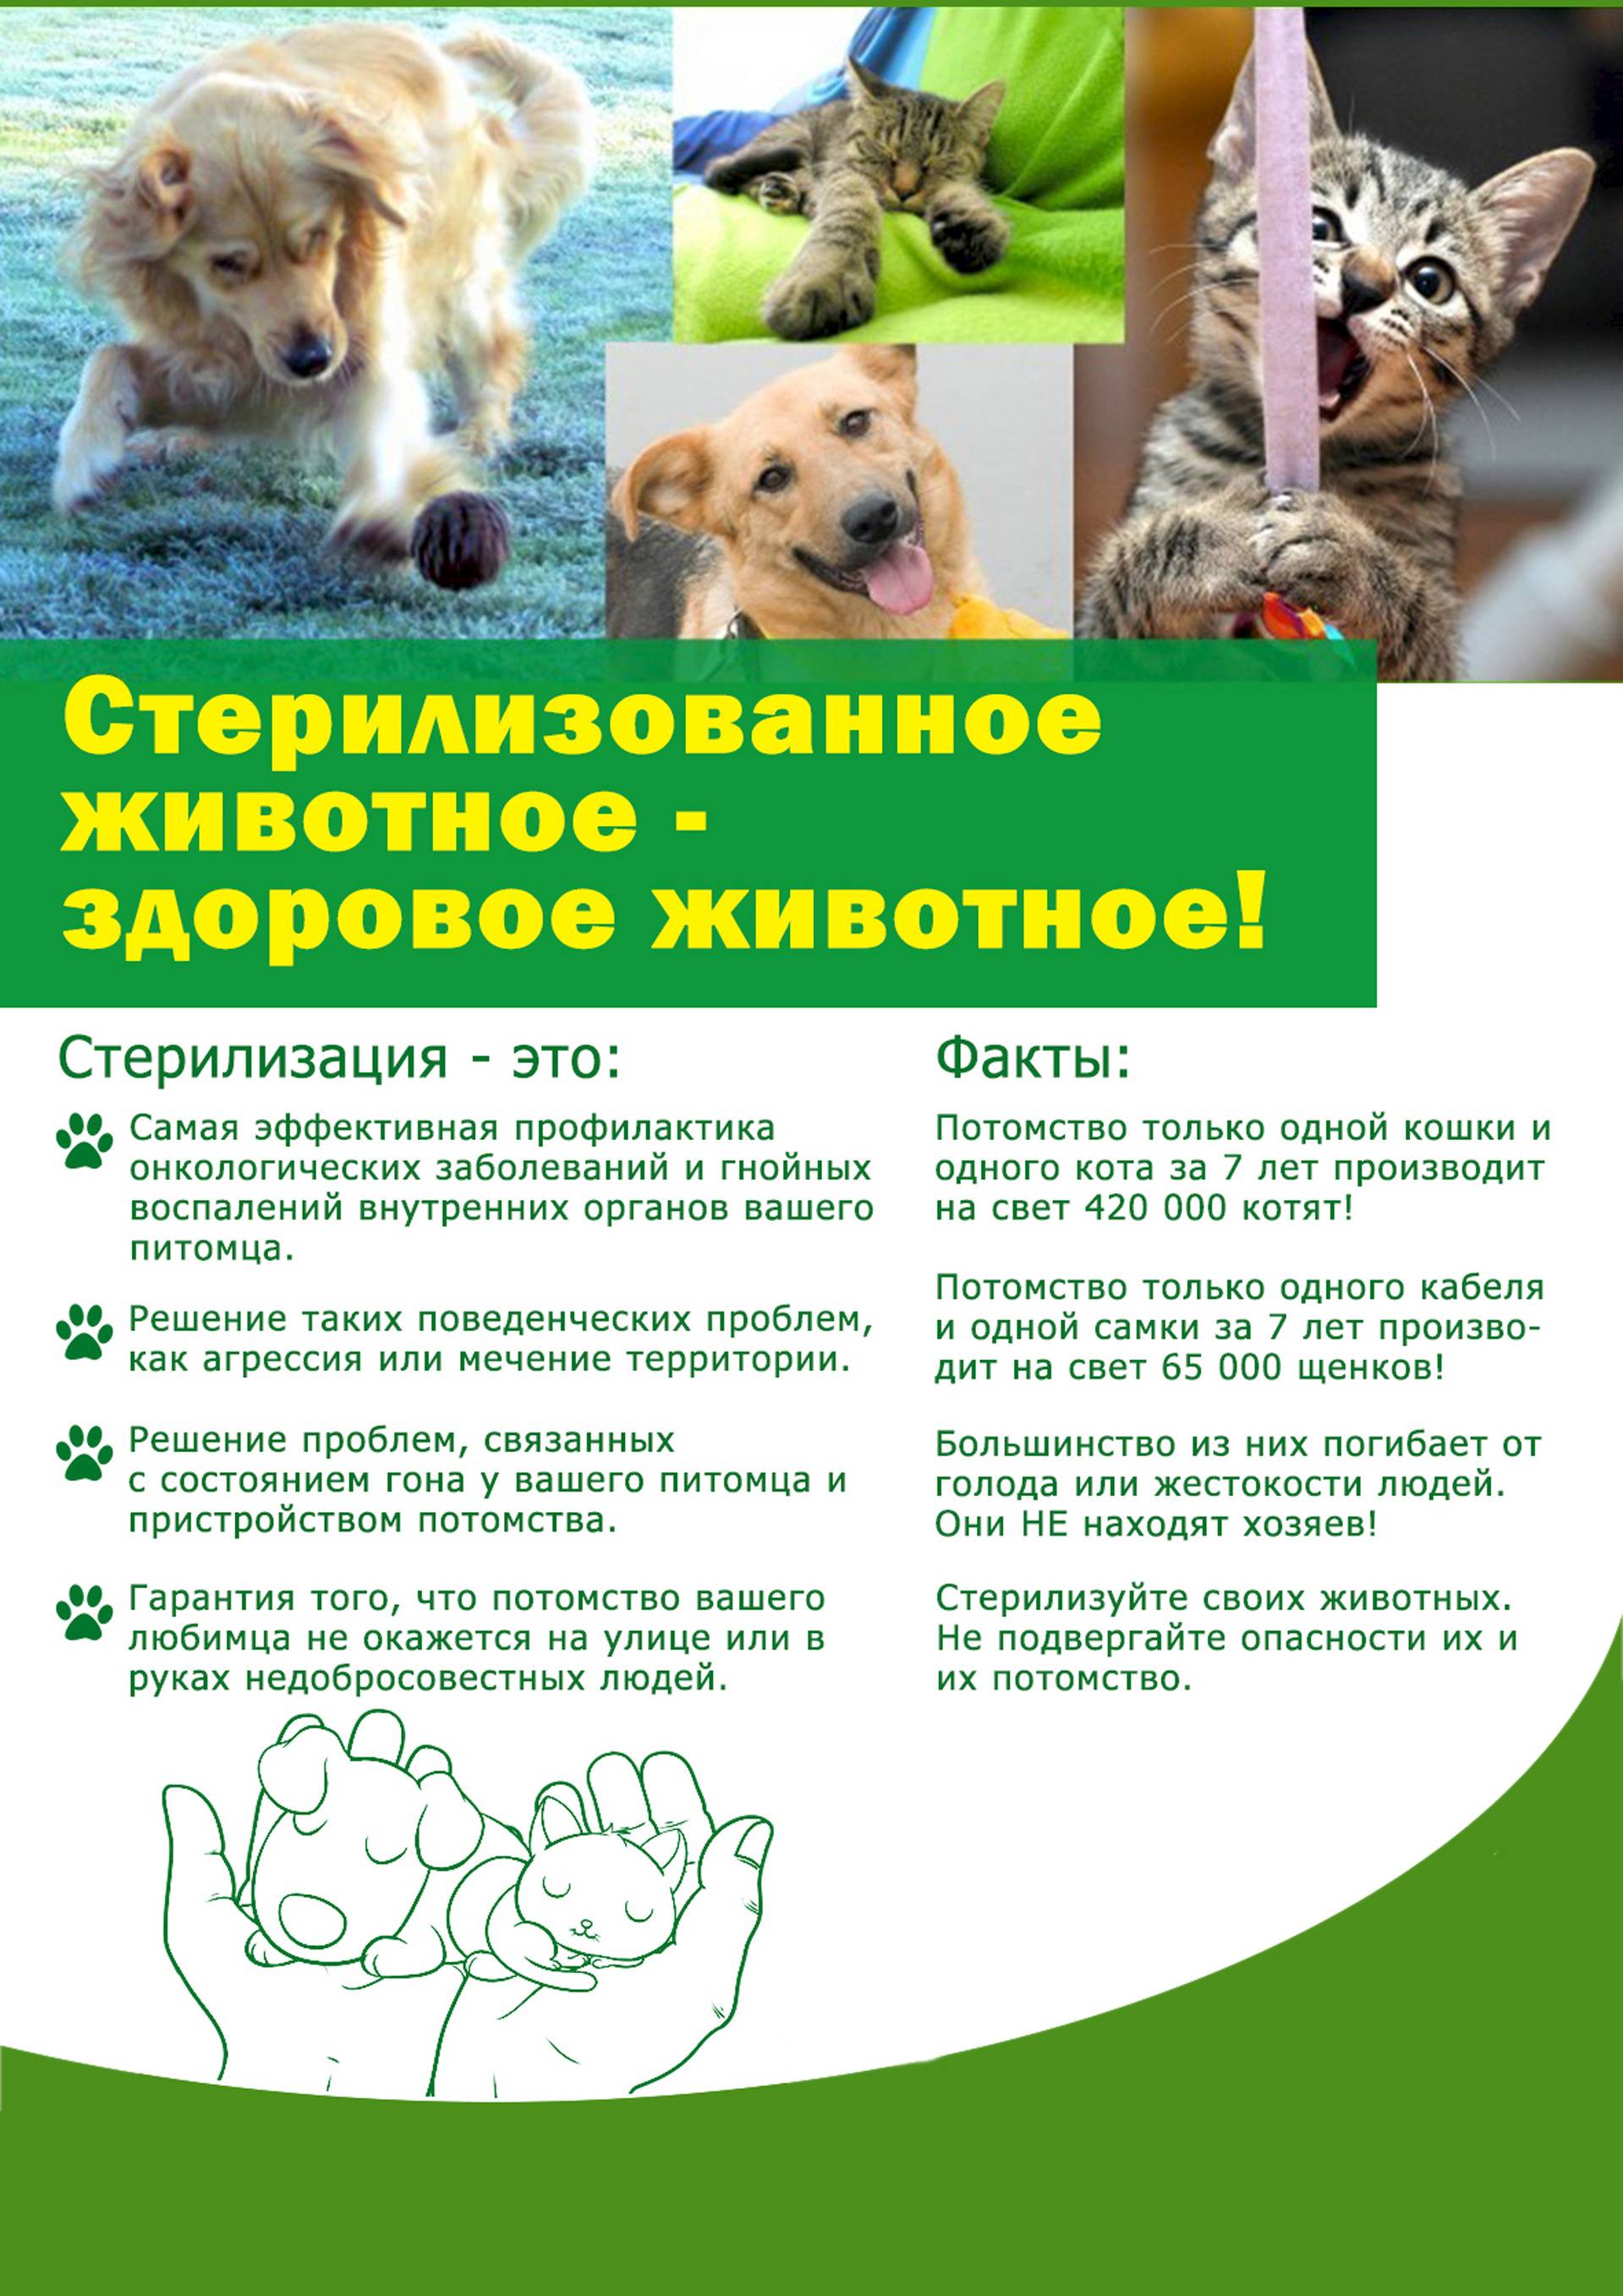 Уход за собакой после кастрации и стерилизации: обработка швов и советы ветеринаров